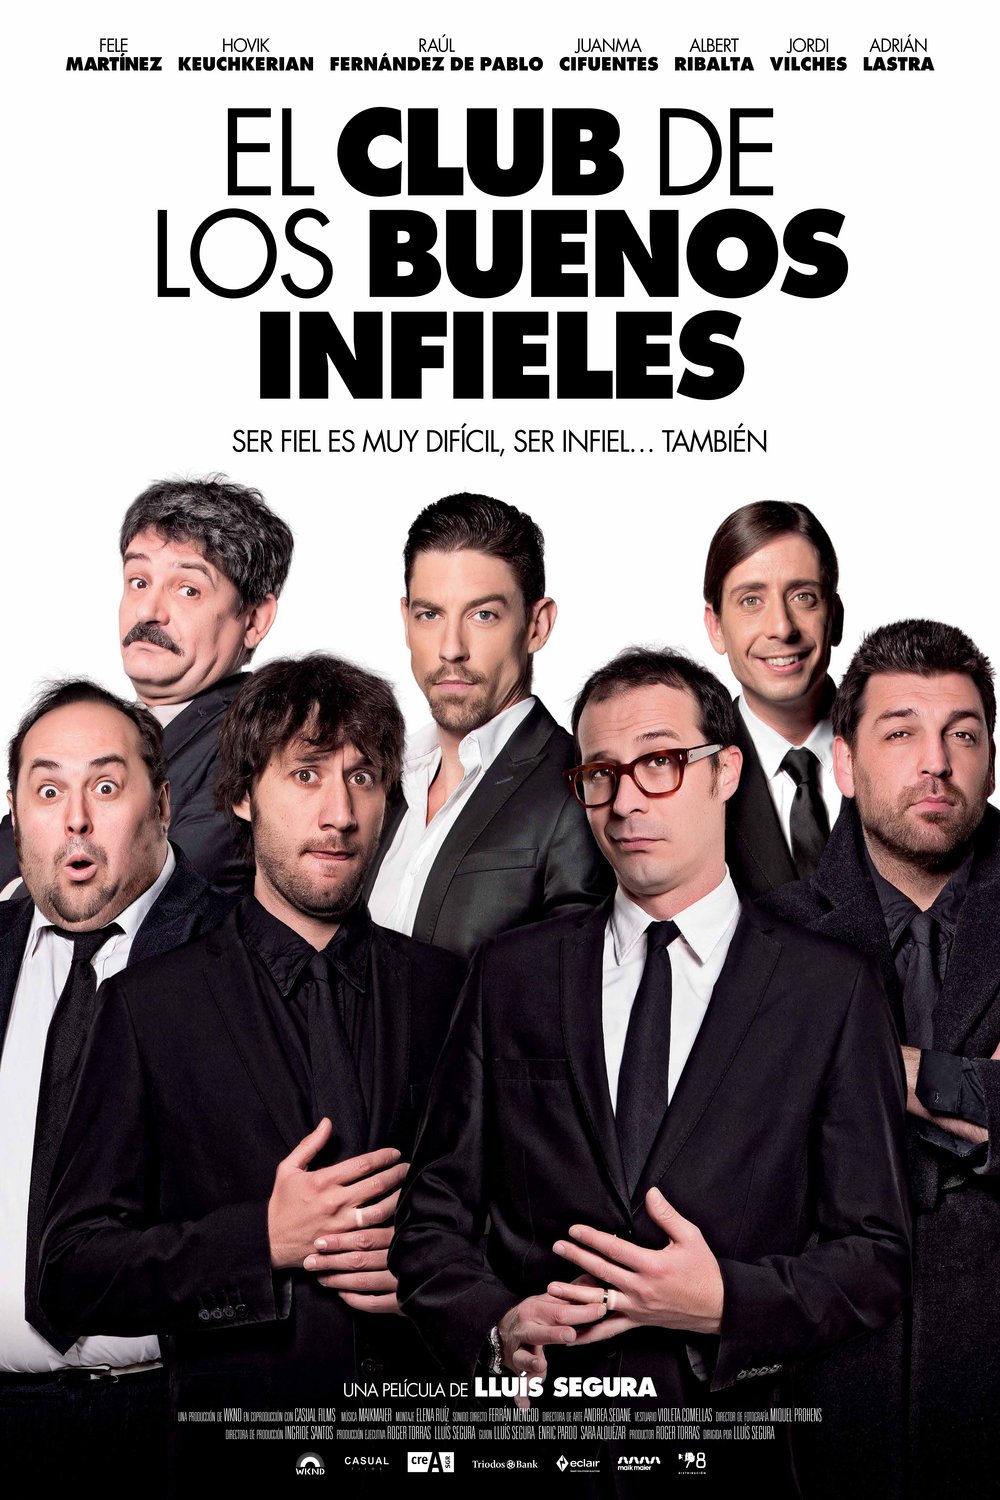 Spanish poster of the movie El club de los buenos infieles